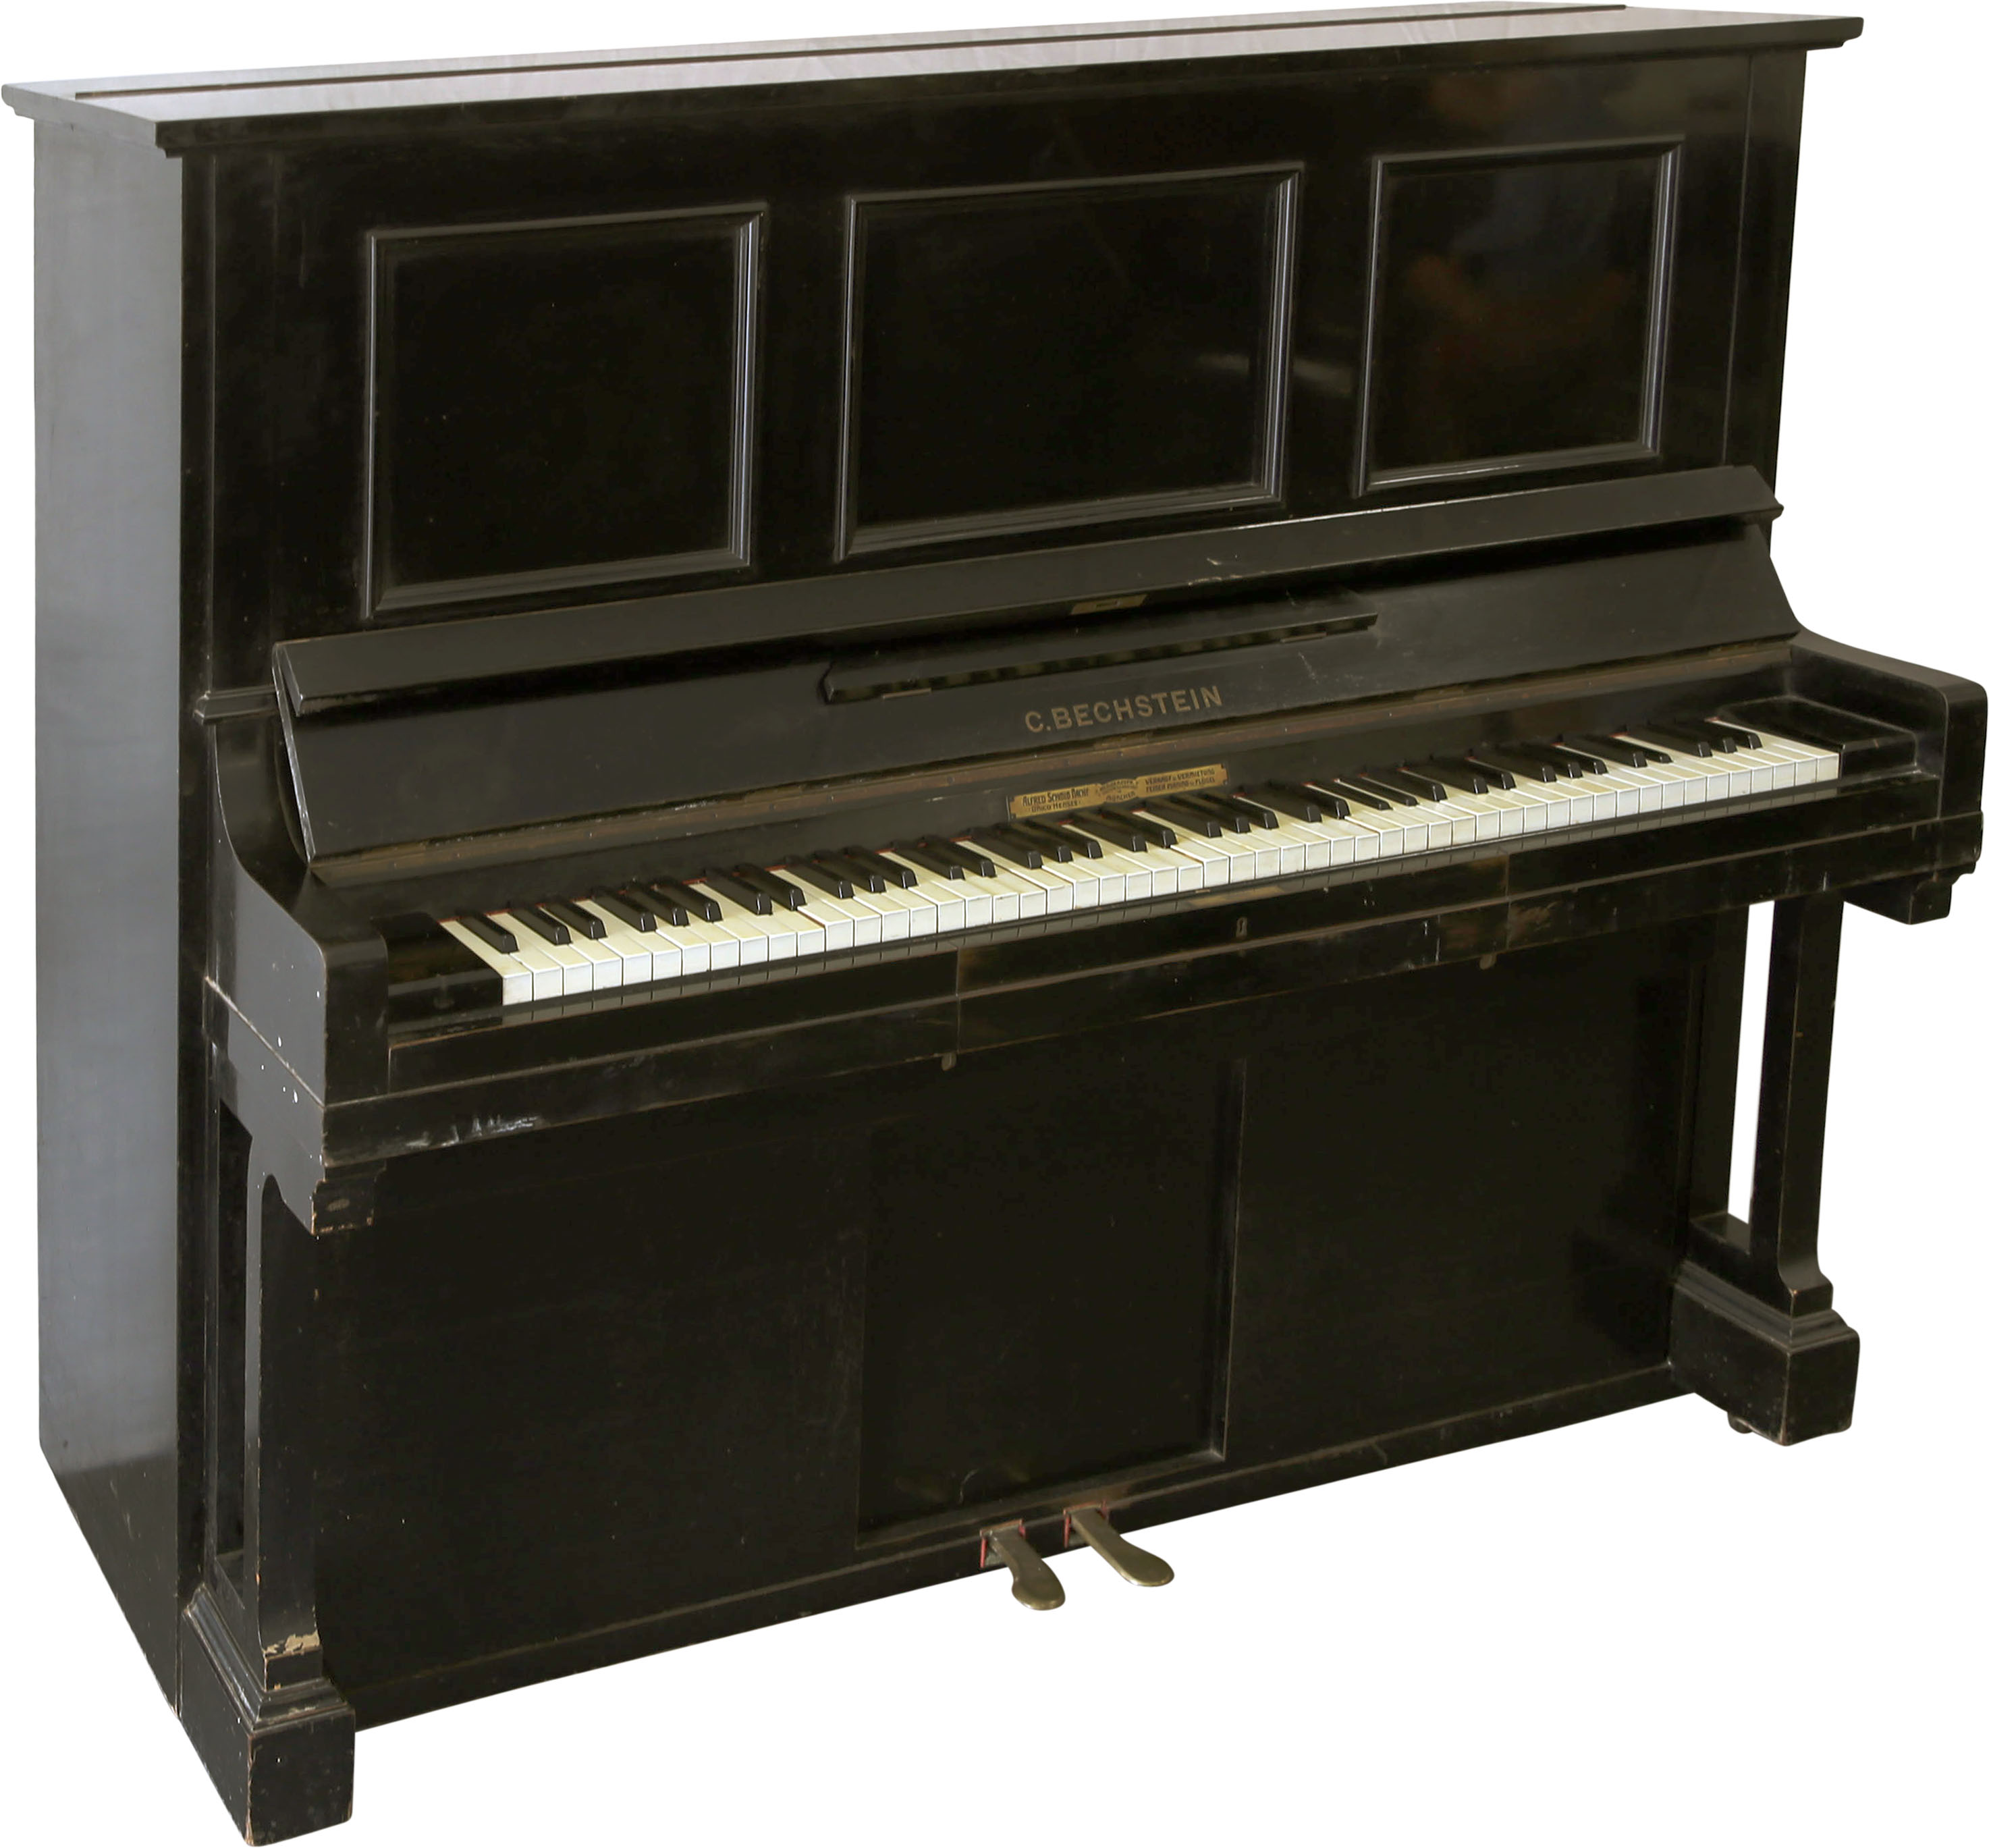 C. Bechstein gebr. Ser.135379 ex pianola